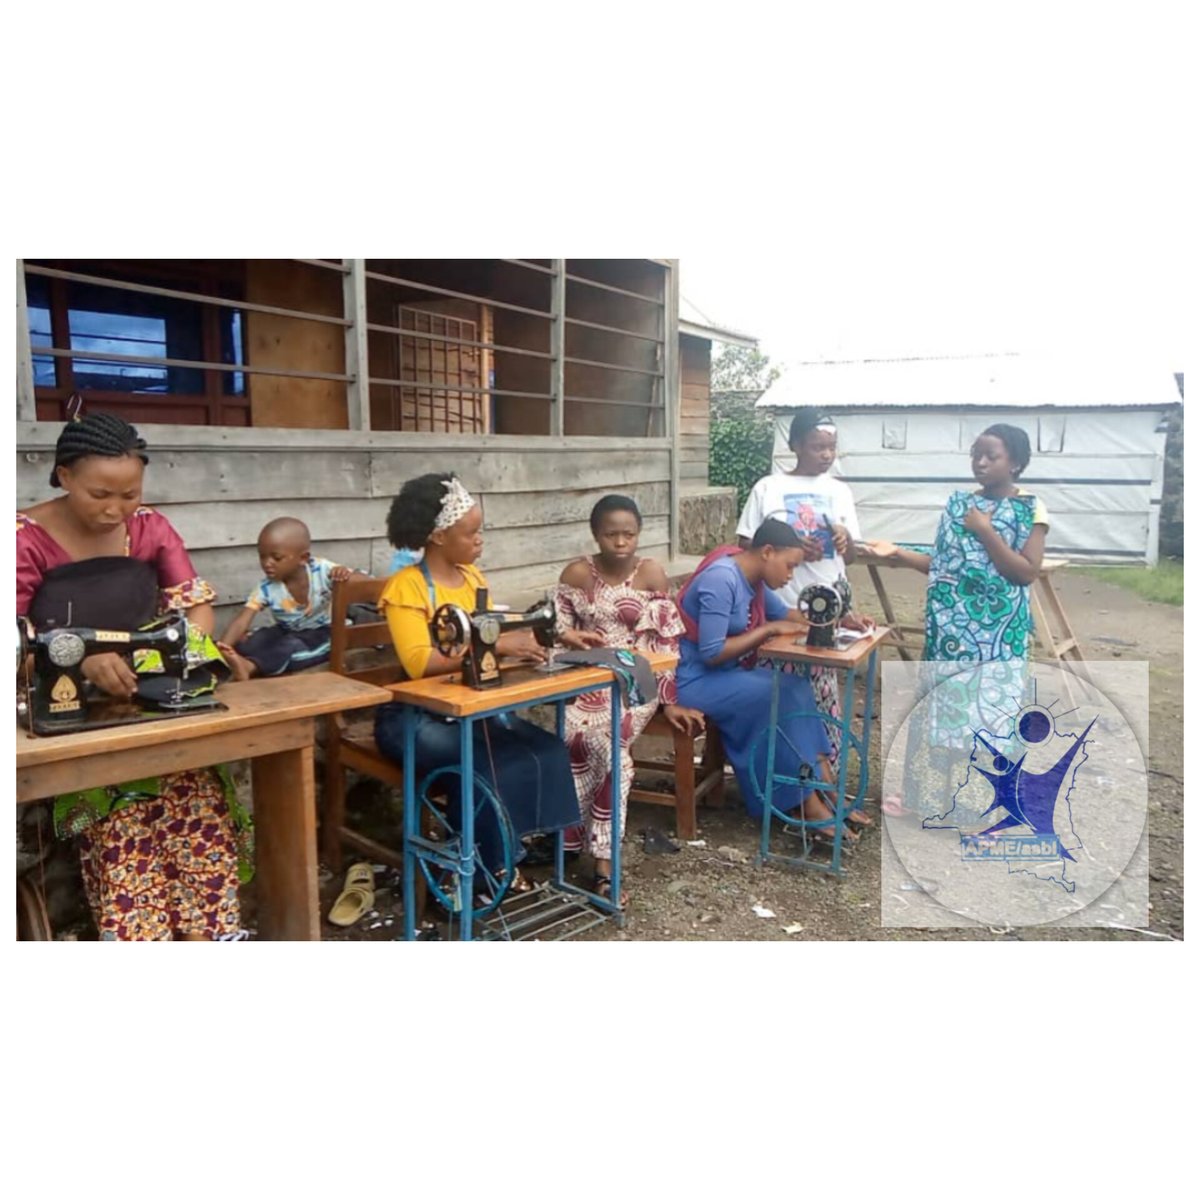 Dns l cadr d la 2em phase du projet HIMIZA MWANAMKE, #himike, 1 projet d' autonomisatio et d lutte contr l VBG, ls fmmes hôtesses d Buhombu mélangées aux déplacées du site TANA  à Nyiragongo  bénéficient d'1e formation en coupe et couture.
#care 
#ONUFemmes 
#MenEngage 
#FFC